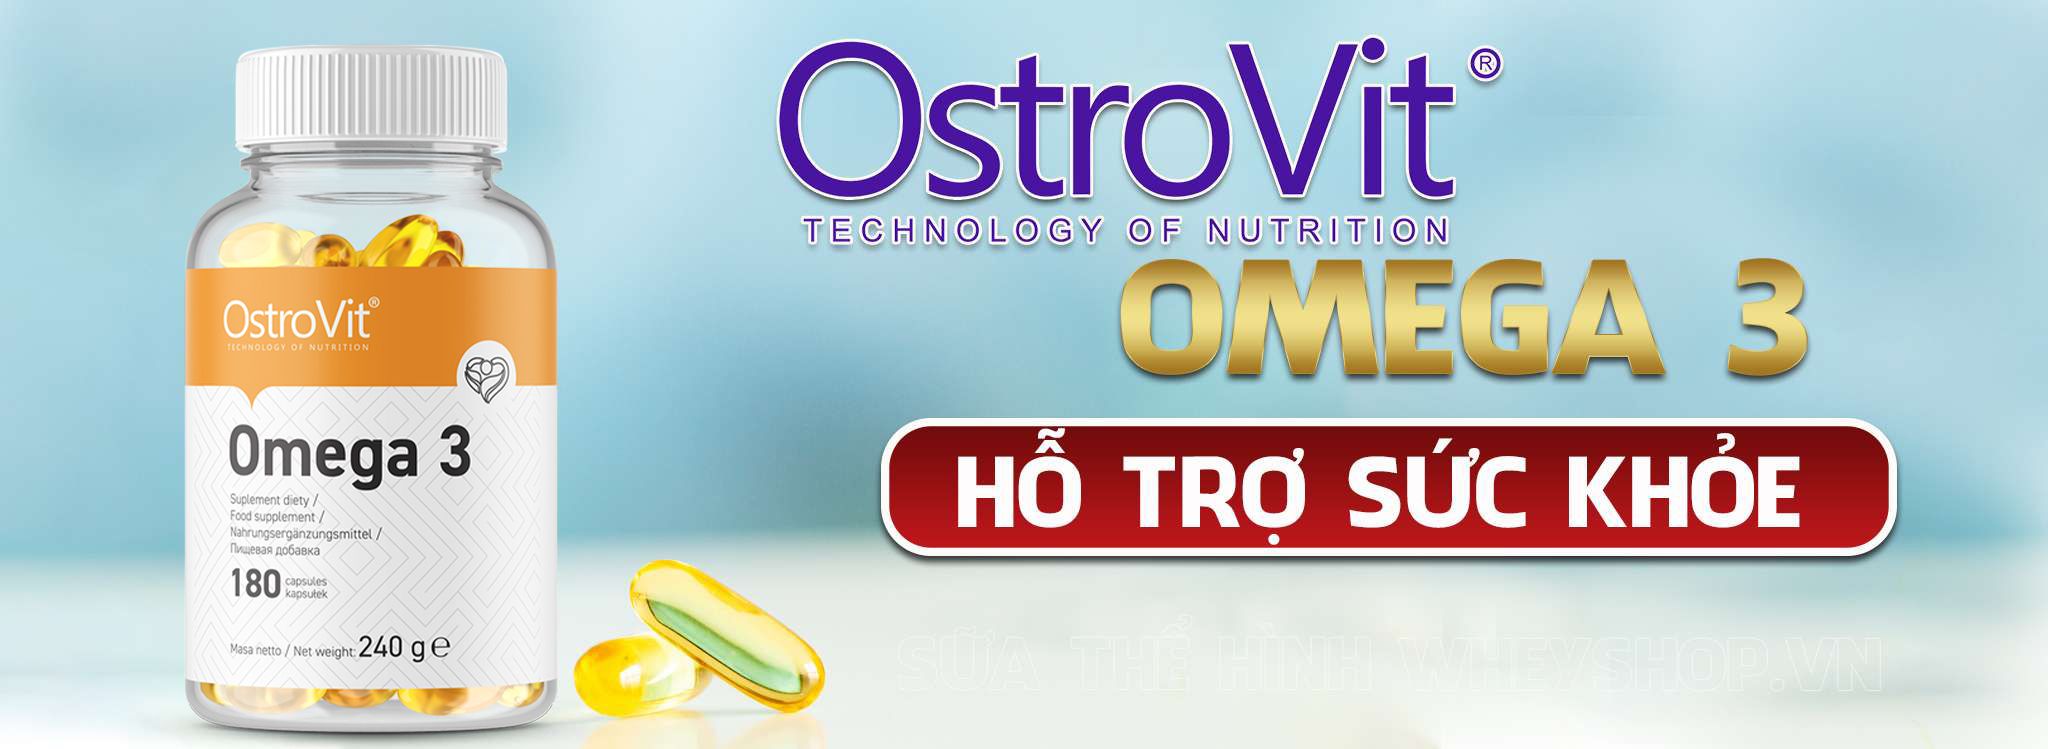 Ostrovit omega 3 180 viên là sản phẩm bổ sung chất béo tốt cho sức khỏe tim mạch, não bộ, sáng mắt,... Ostrovit omega 3 180 viên nhập khẩu chất lượng, giá rẻ...